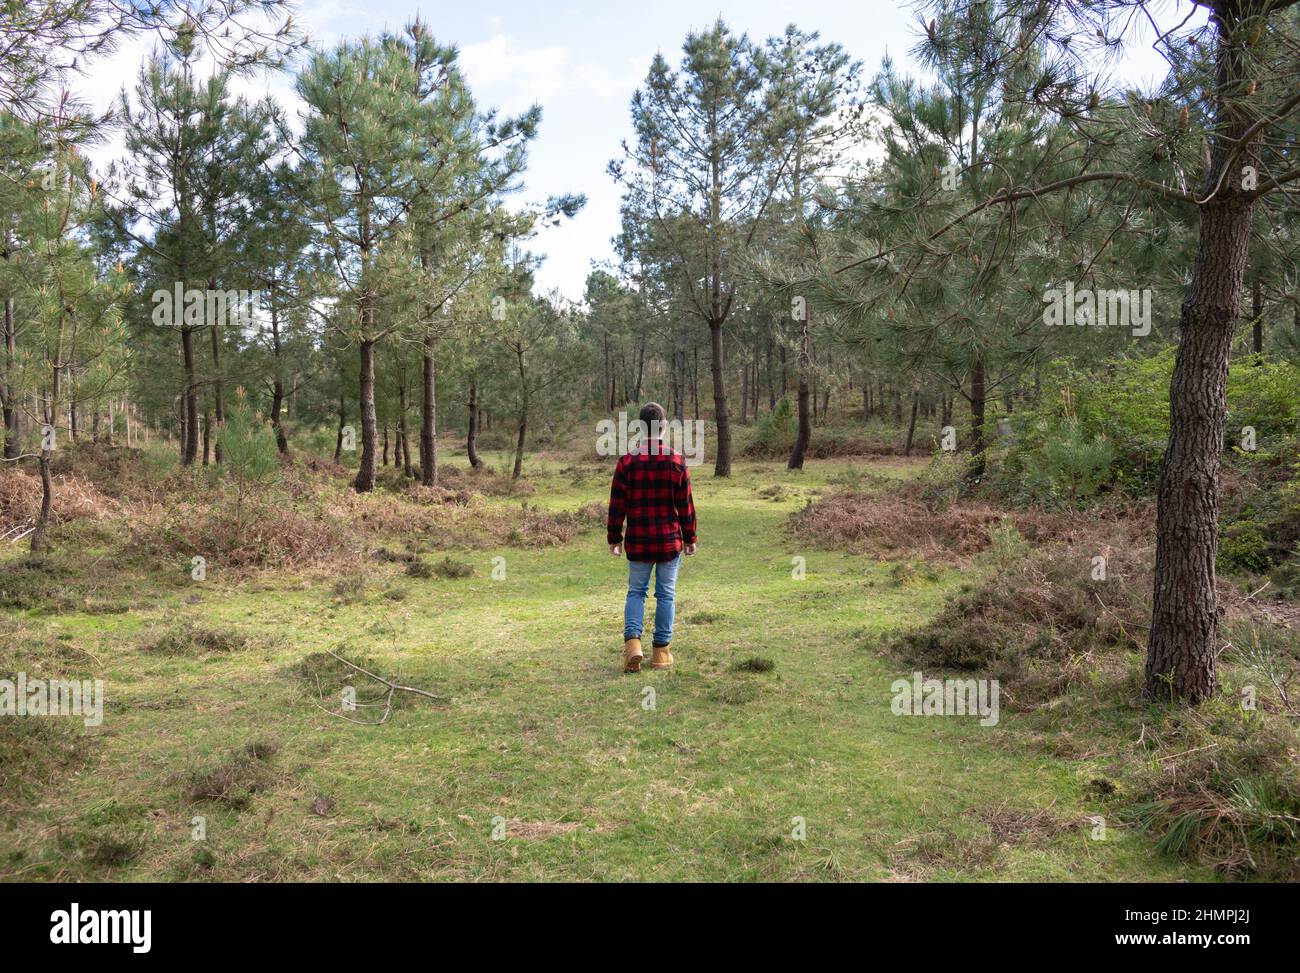 Vue arrière d'un homme dans un maillot de bûcherons marchant dans une forêt, Espagne Banque D'Images